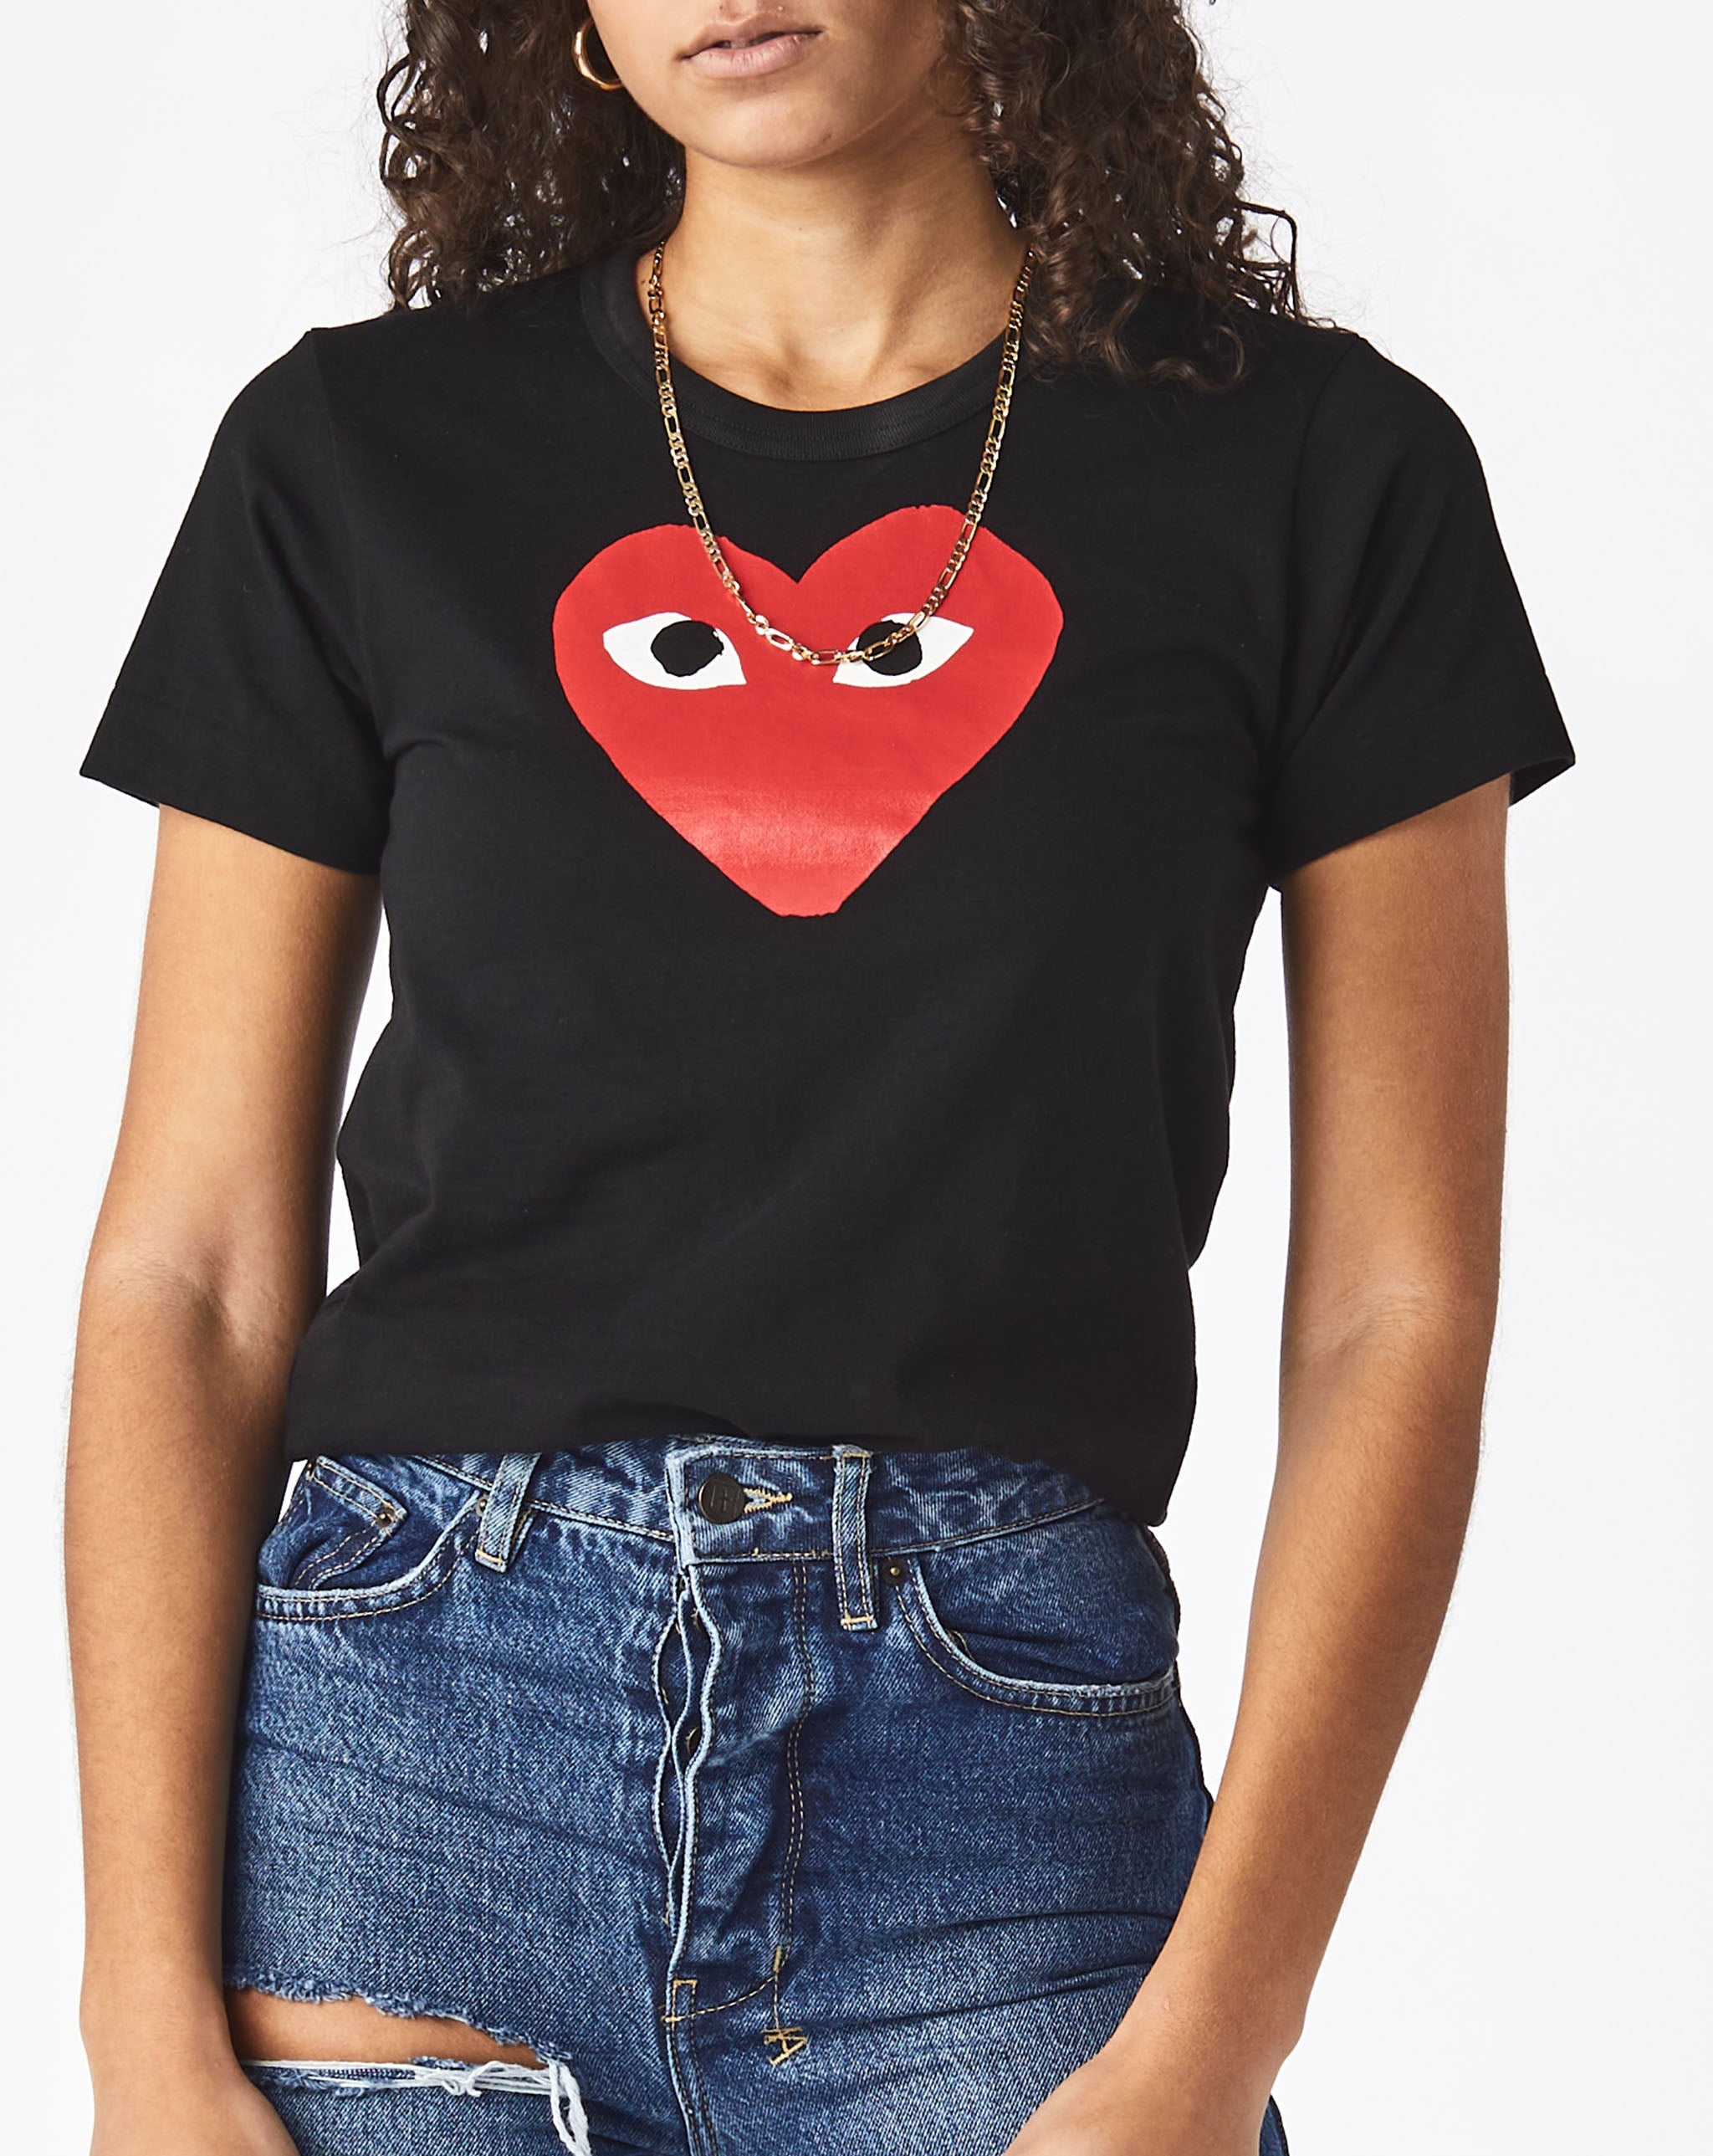 Womens Heart T-Shirt Women's Play T-Shirt  - Cheap Urlfreeze Jordan outlet